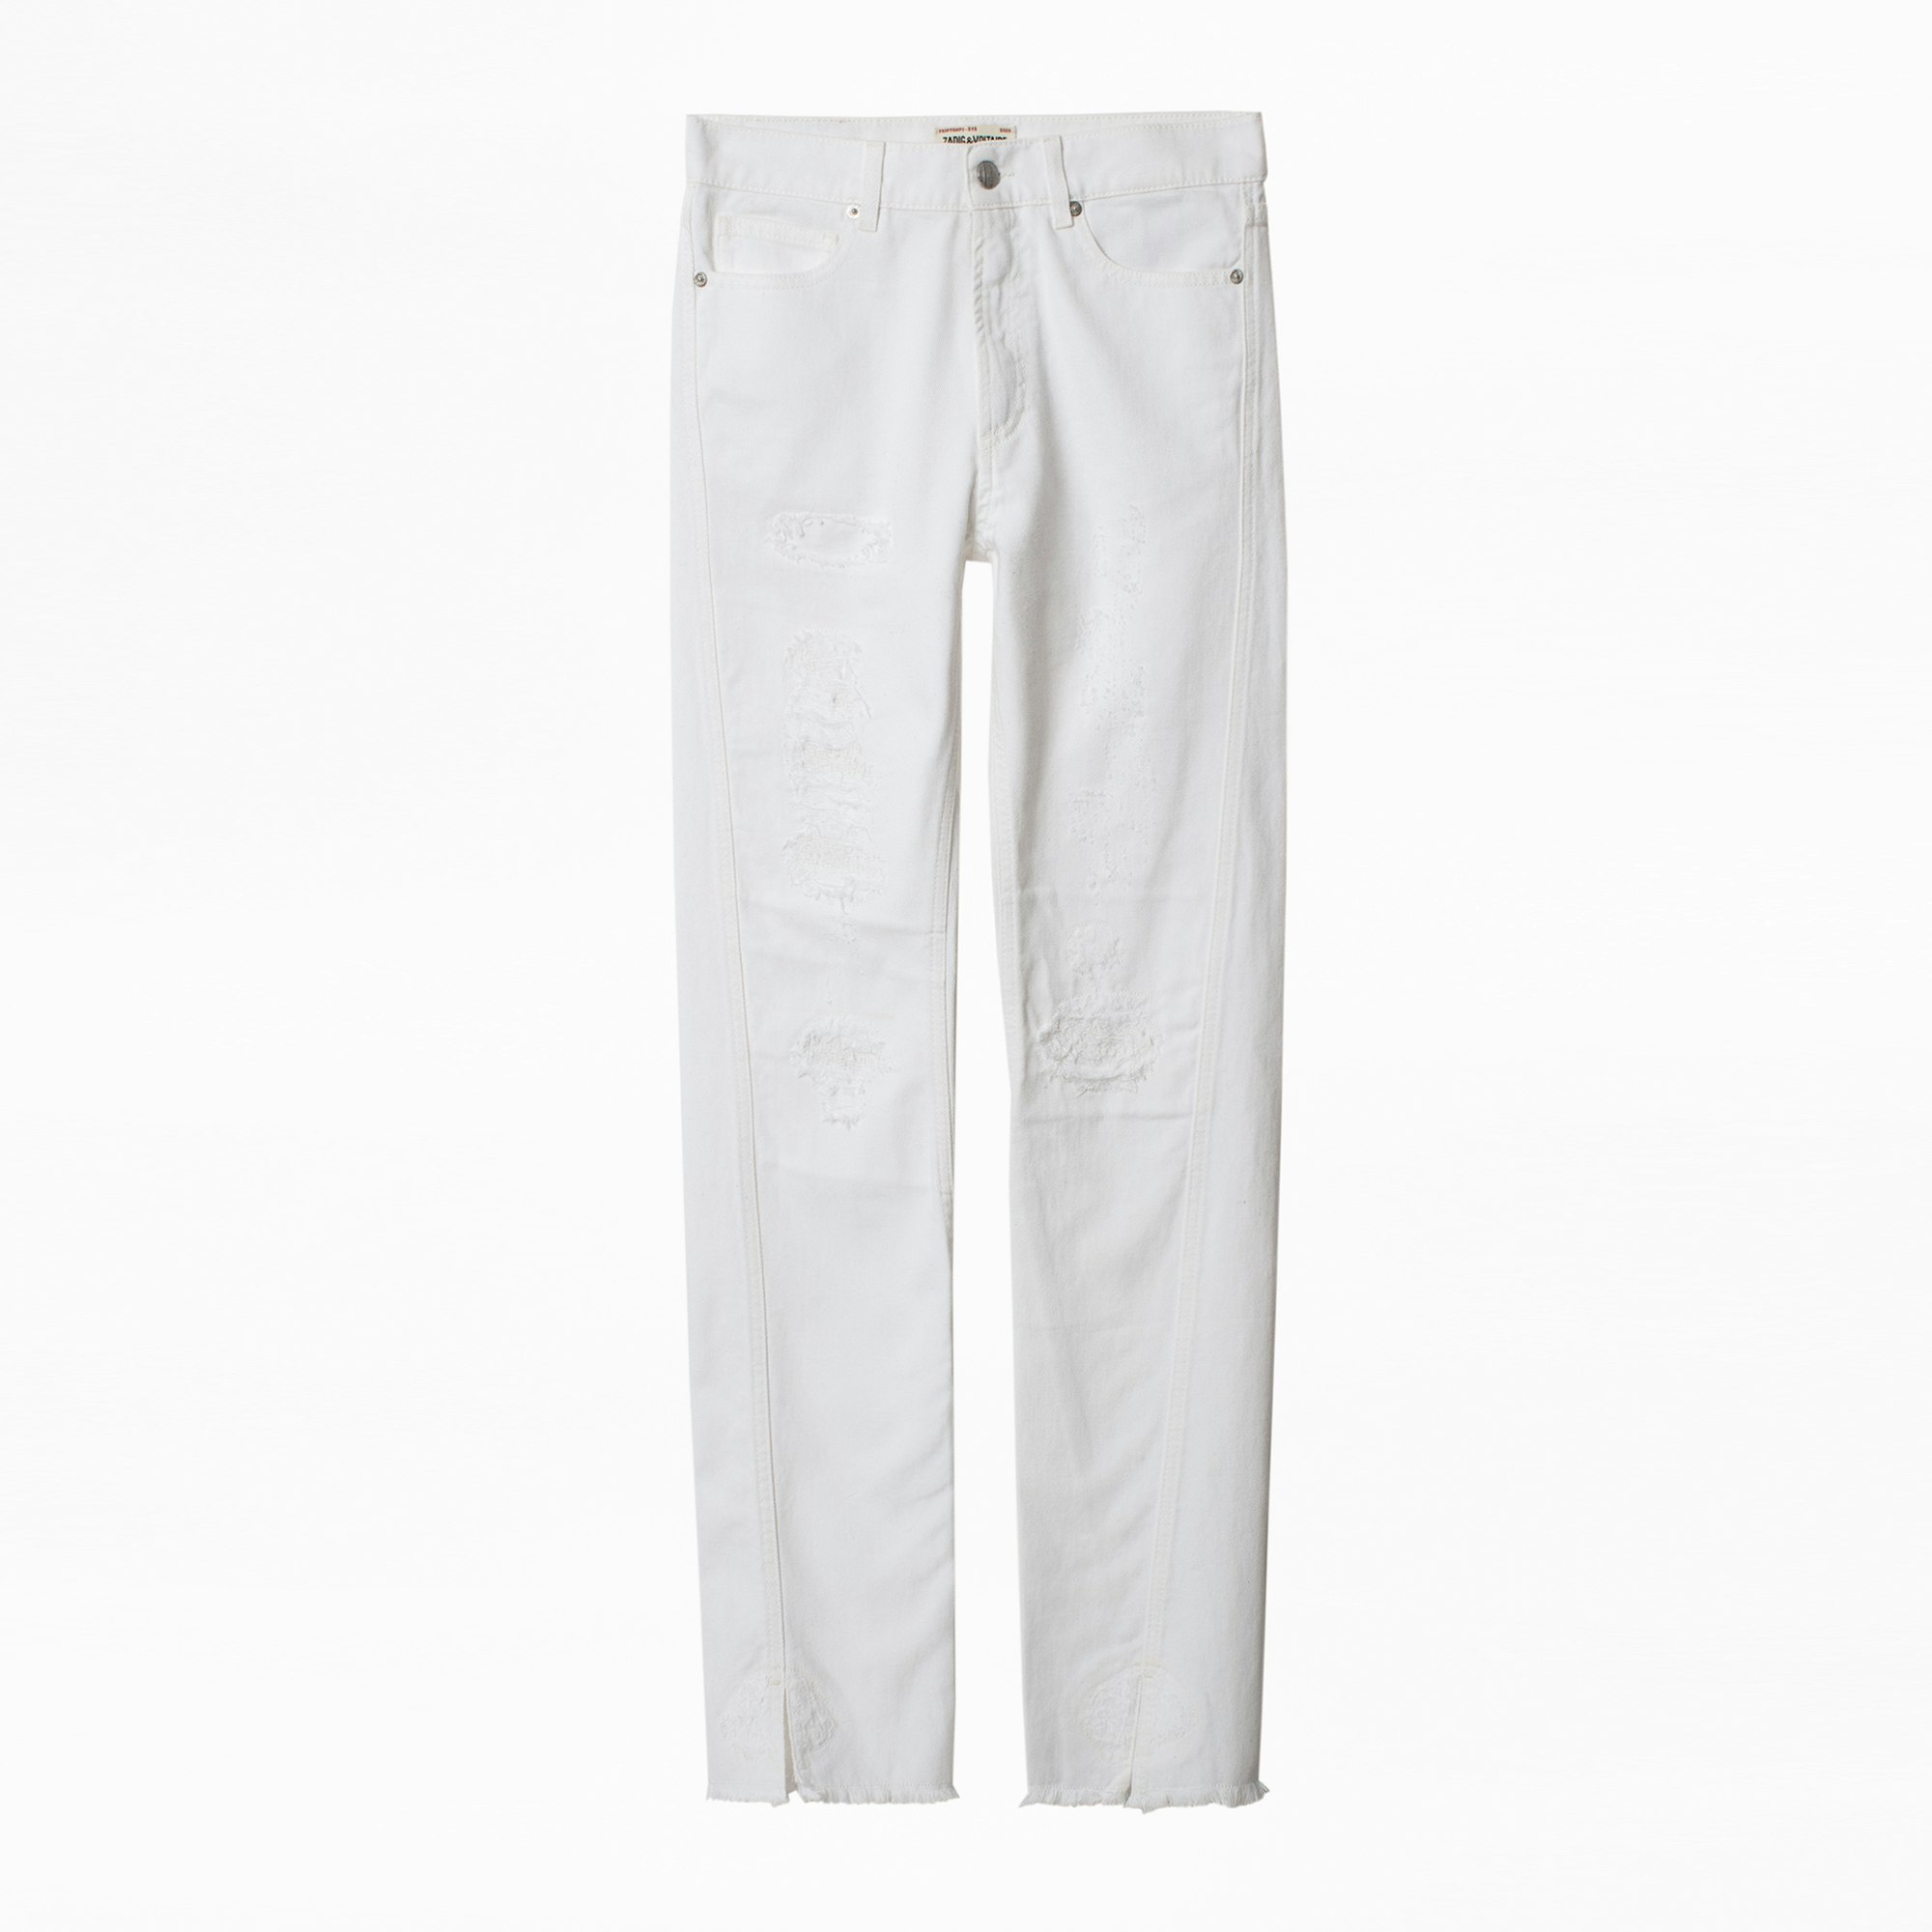 Jeans Erini Jeans bianchi da donna, effetto consumato.